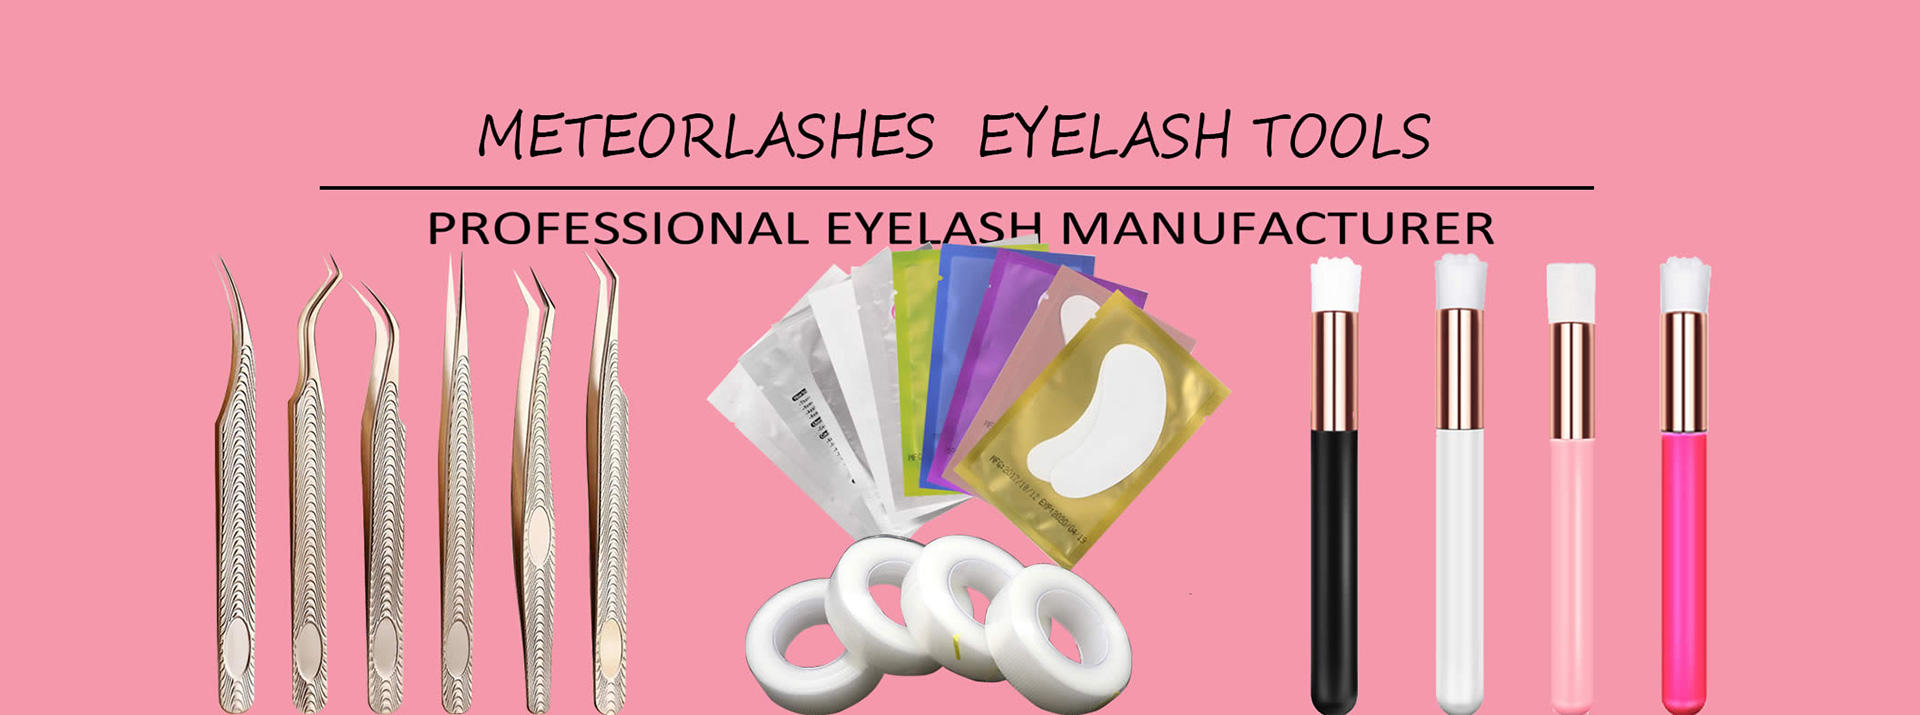 I-Eyelash Extension Tools